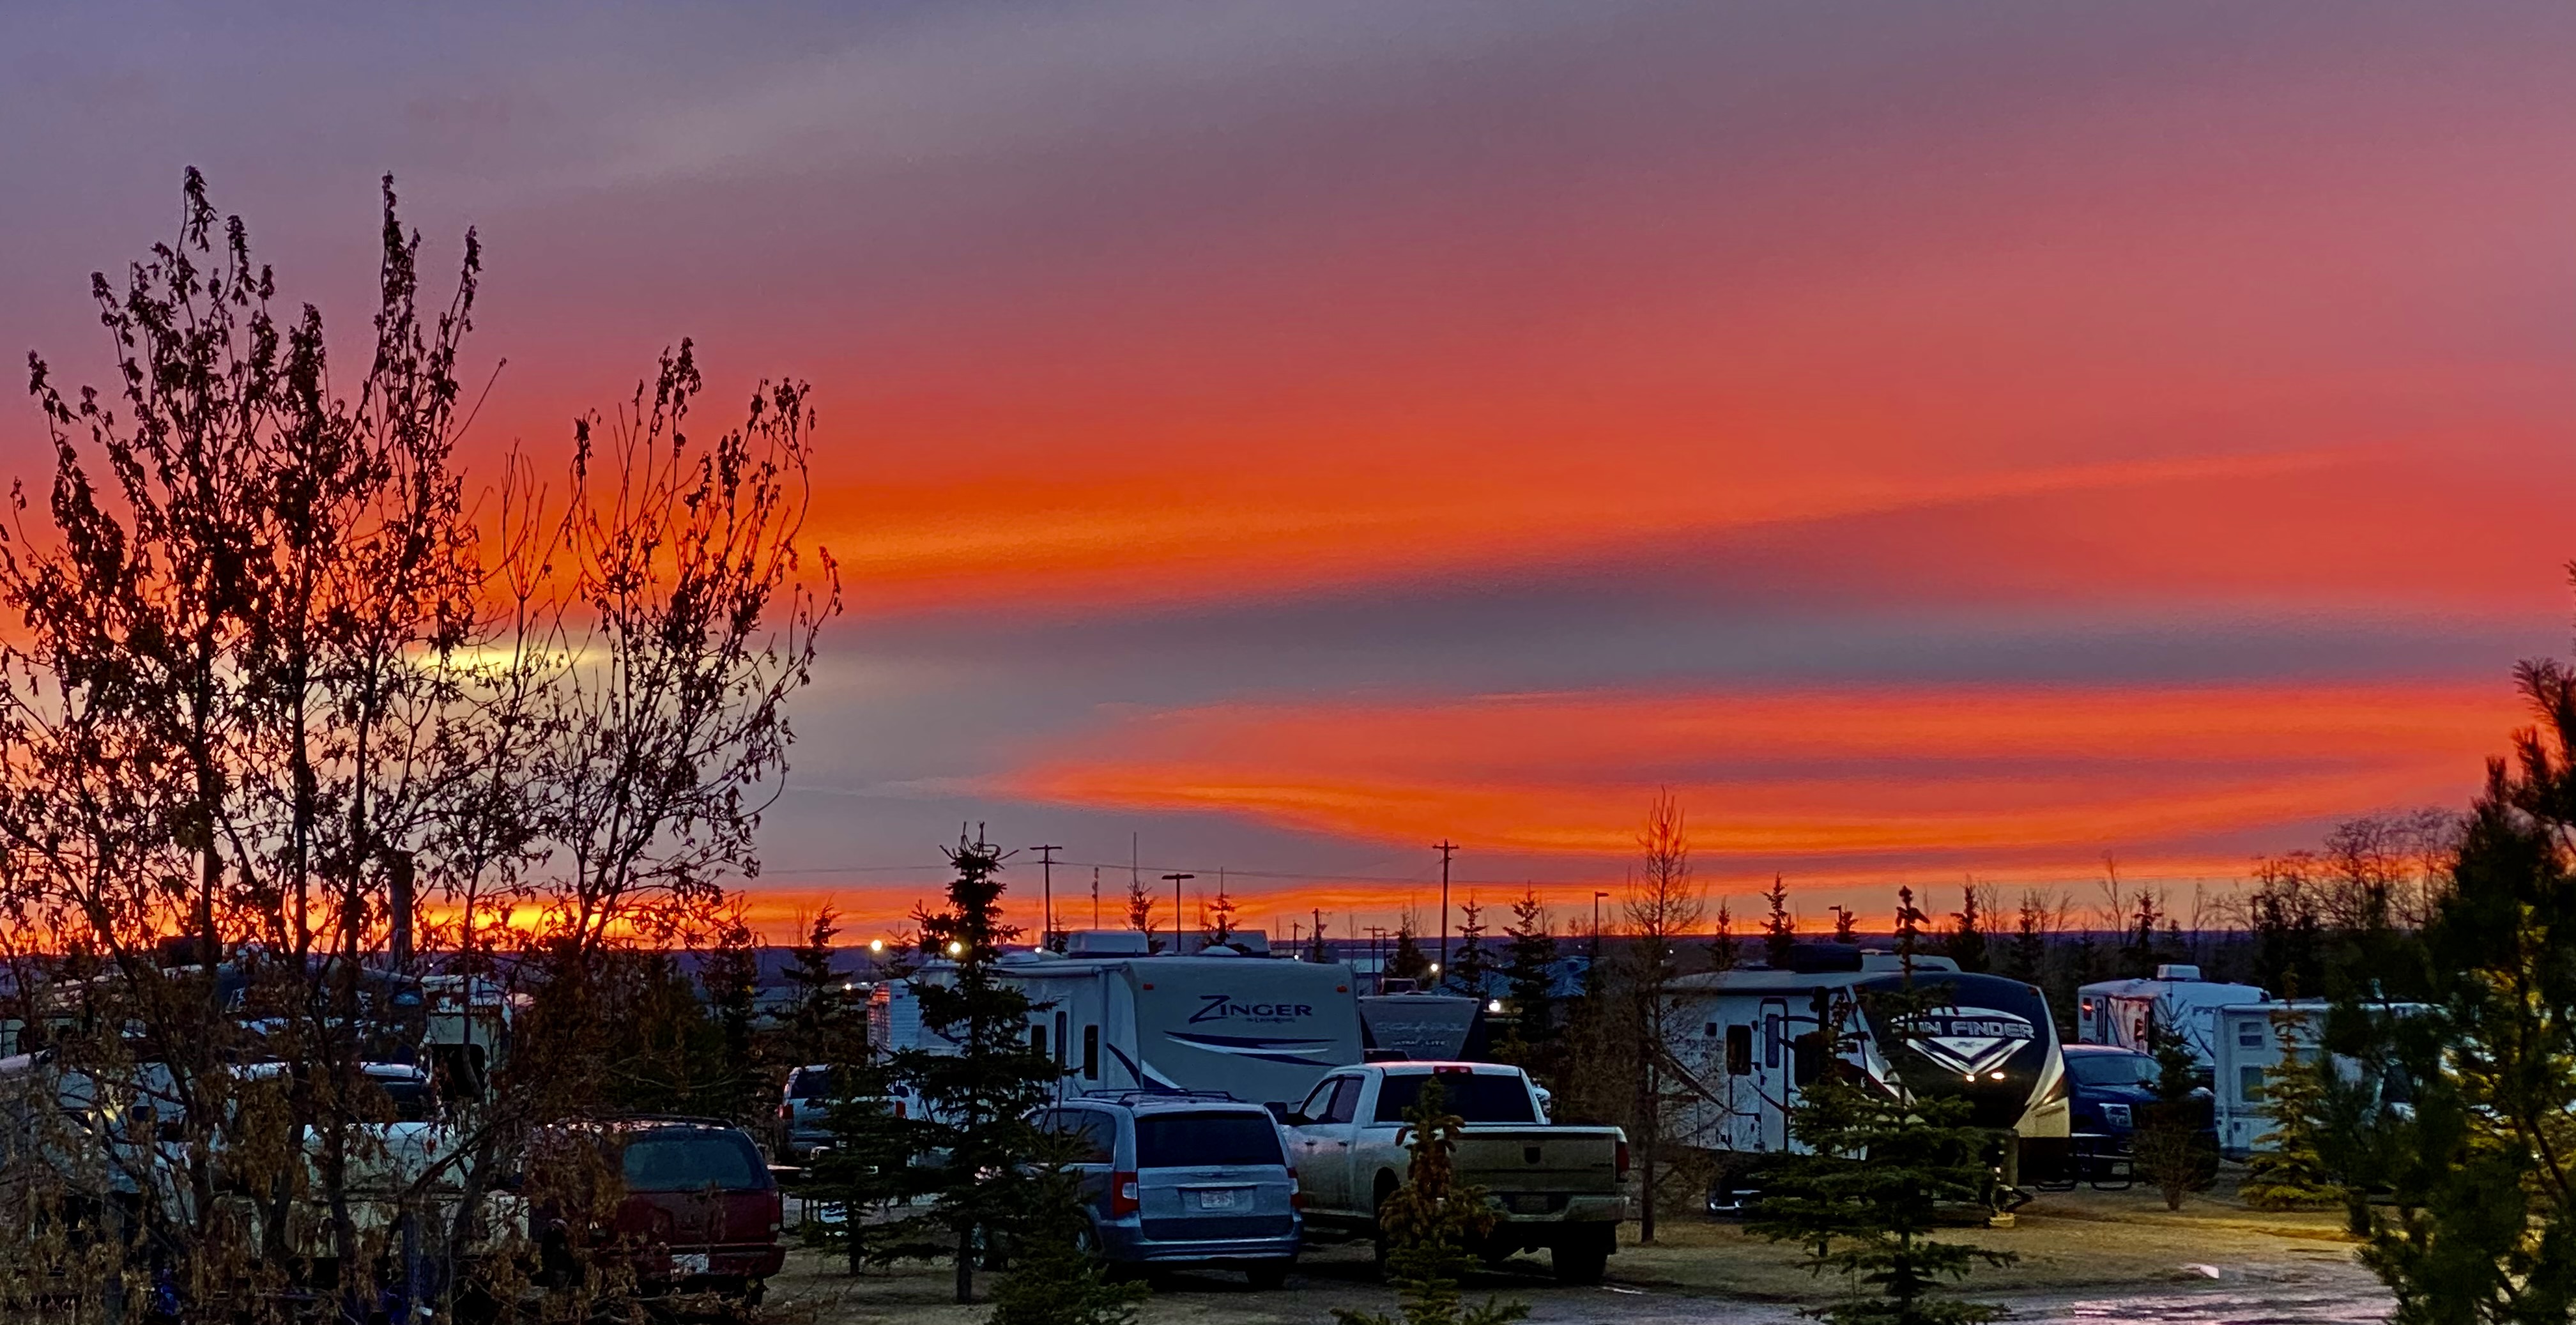 A sunset sky over an RV park.